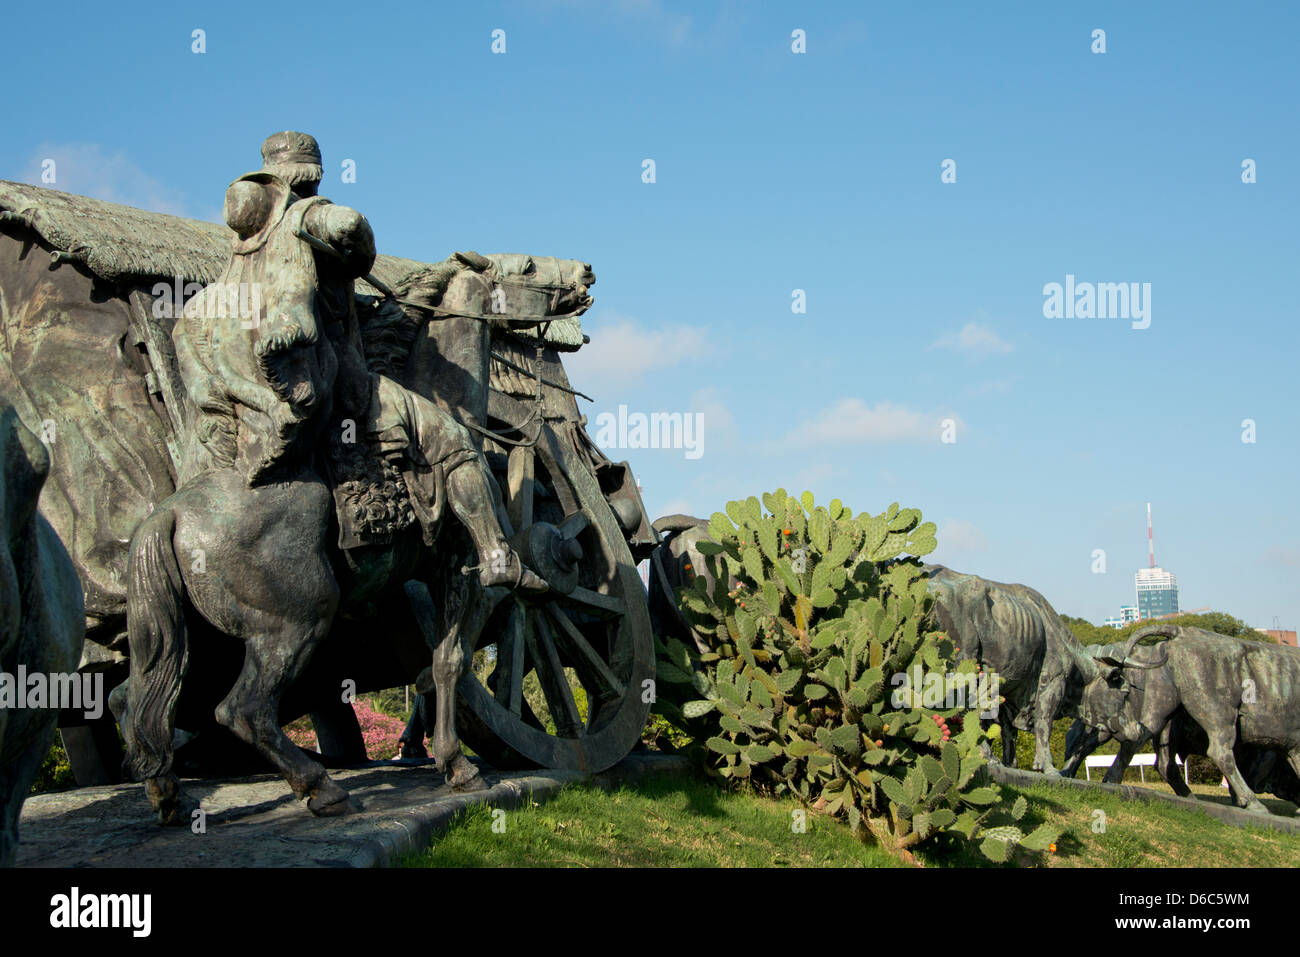 Uruguay, Montevideo, Battle Park (Parque Jose Battle y Ordonez). Famous sculpture, La Carreta. Stock Photo